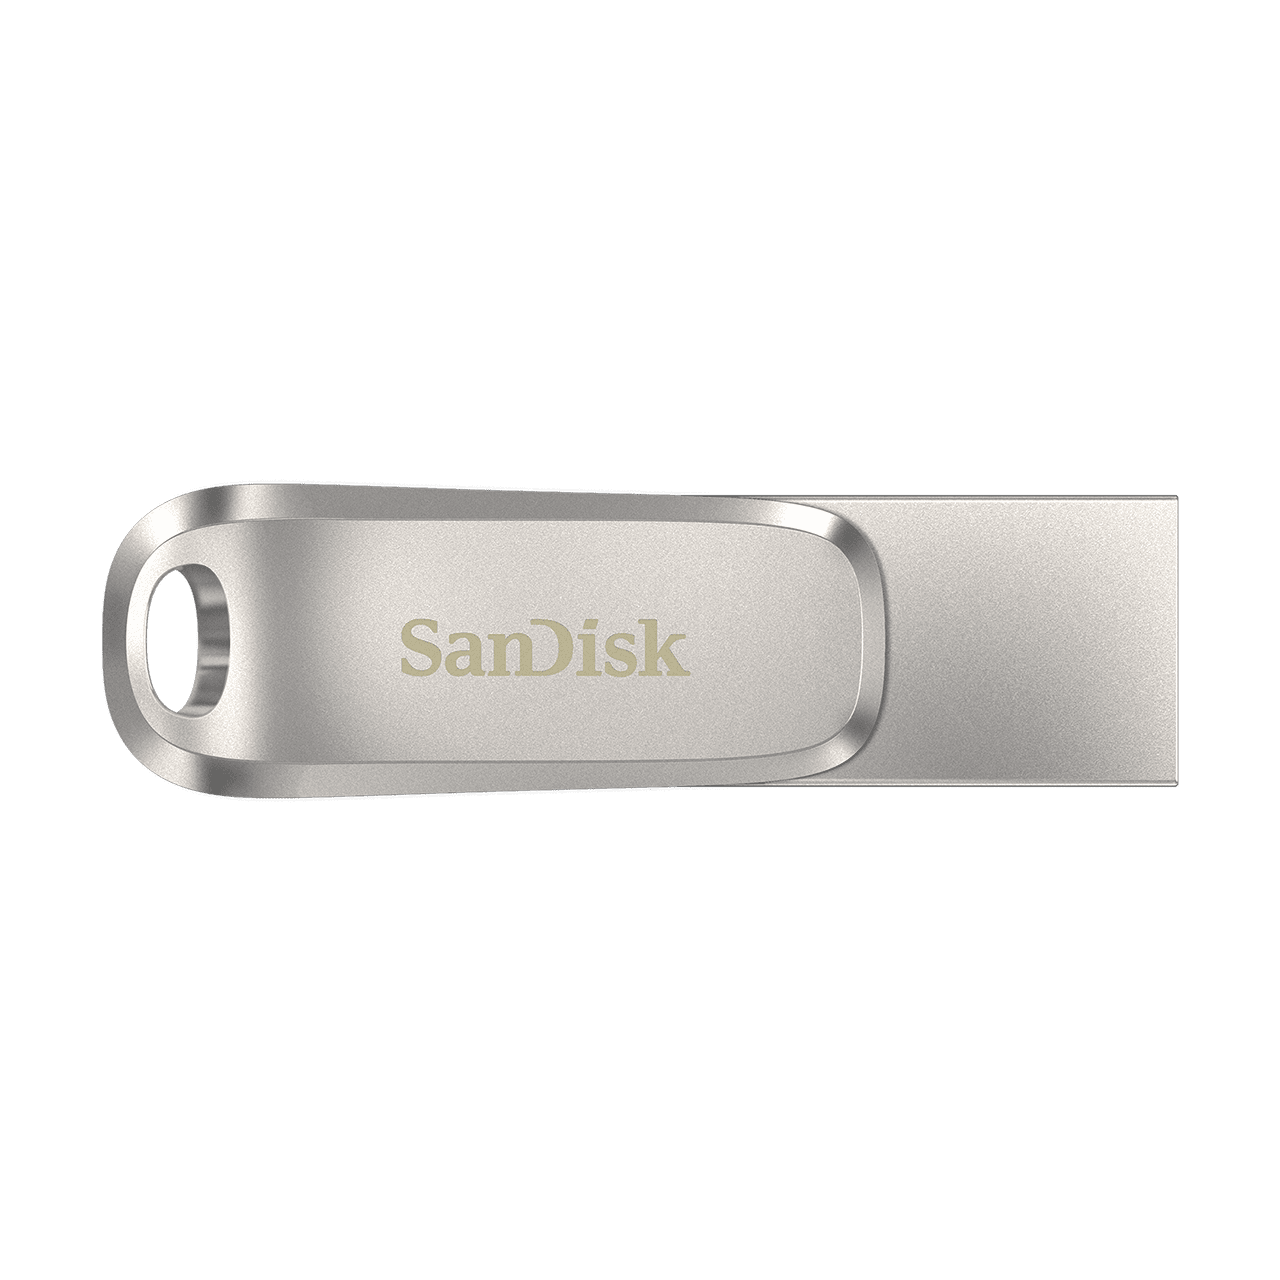 Obrázek SanDisk Ultra Dual Drive Luxe/32GB/150MBps/USB 3.1/USB-A + USB-C/Stříbrná